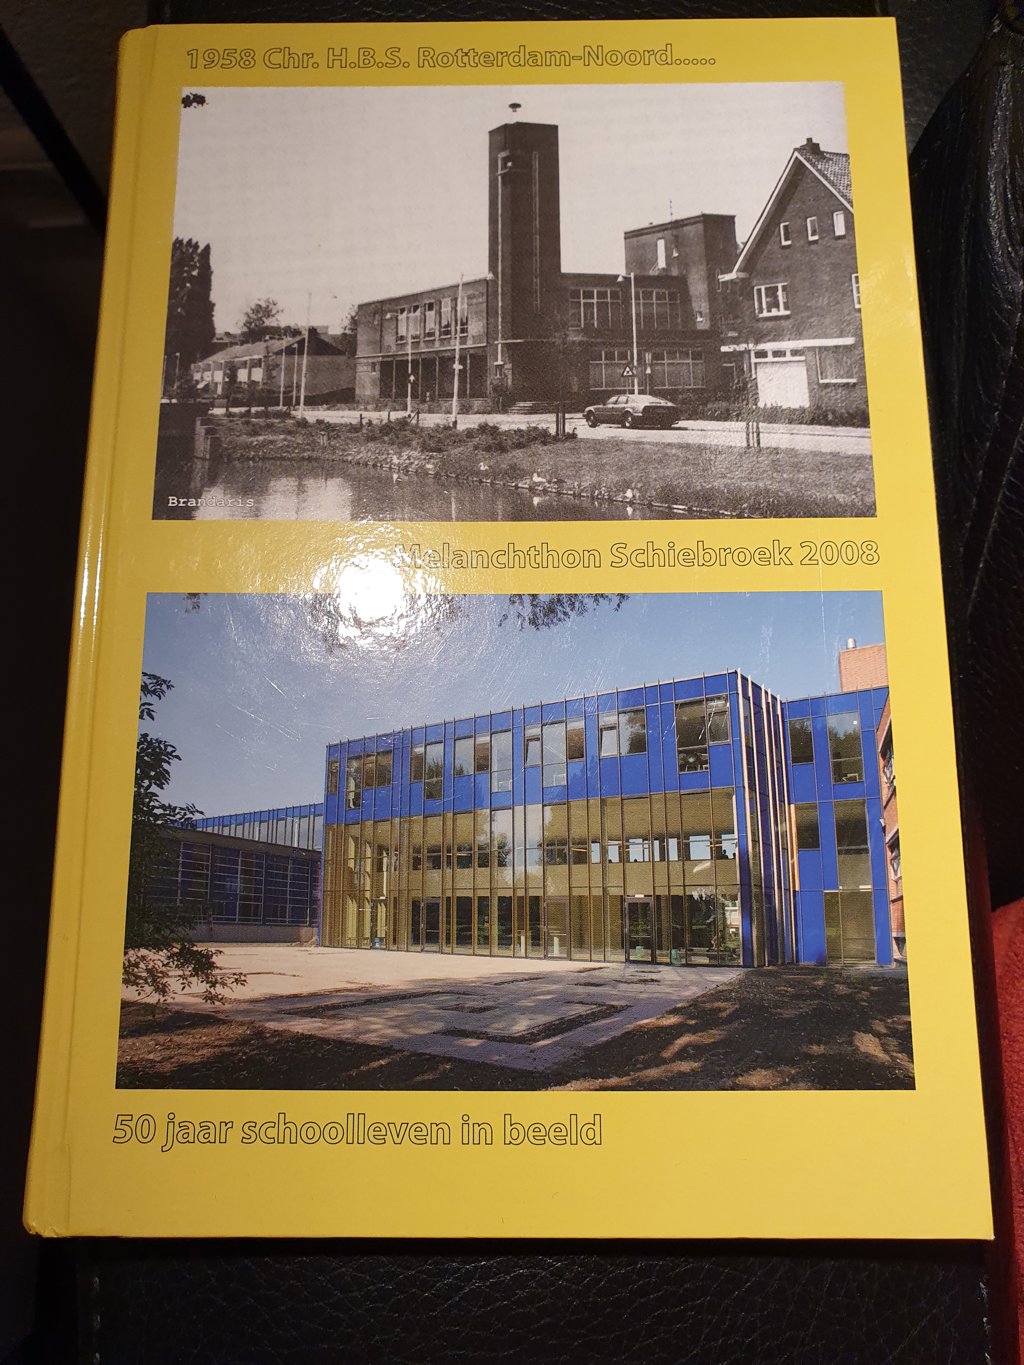 Melanchthon jubileumboek 1958 - 2008